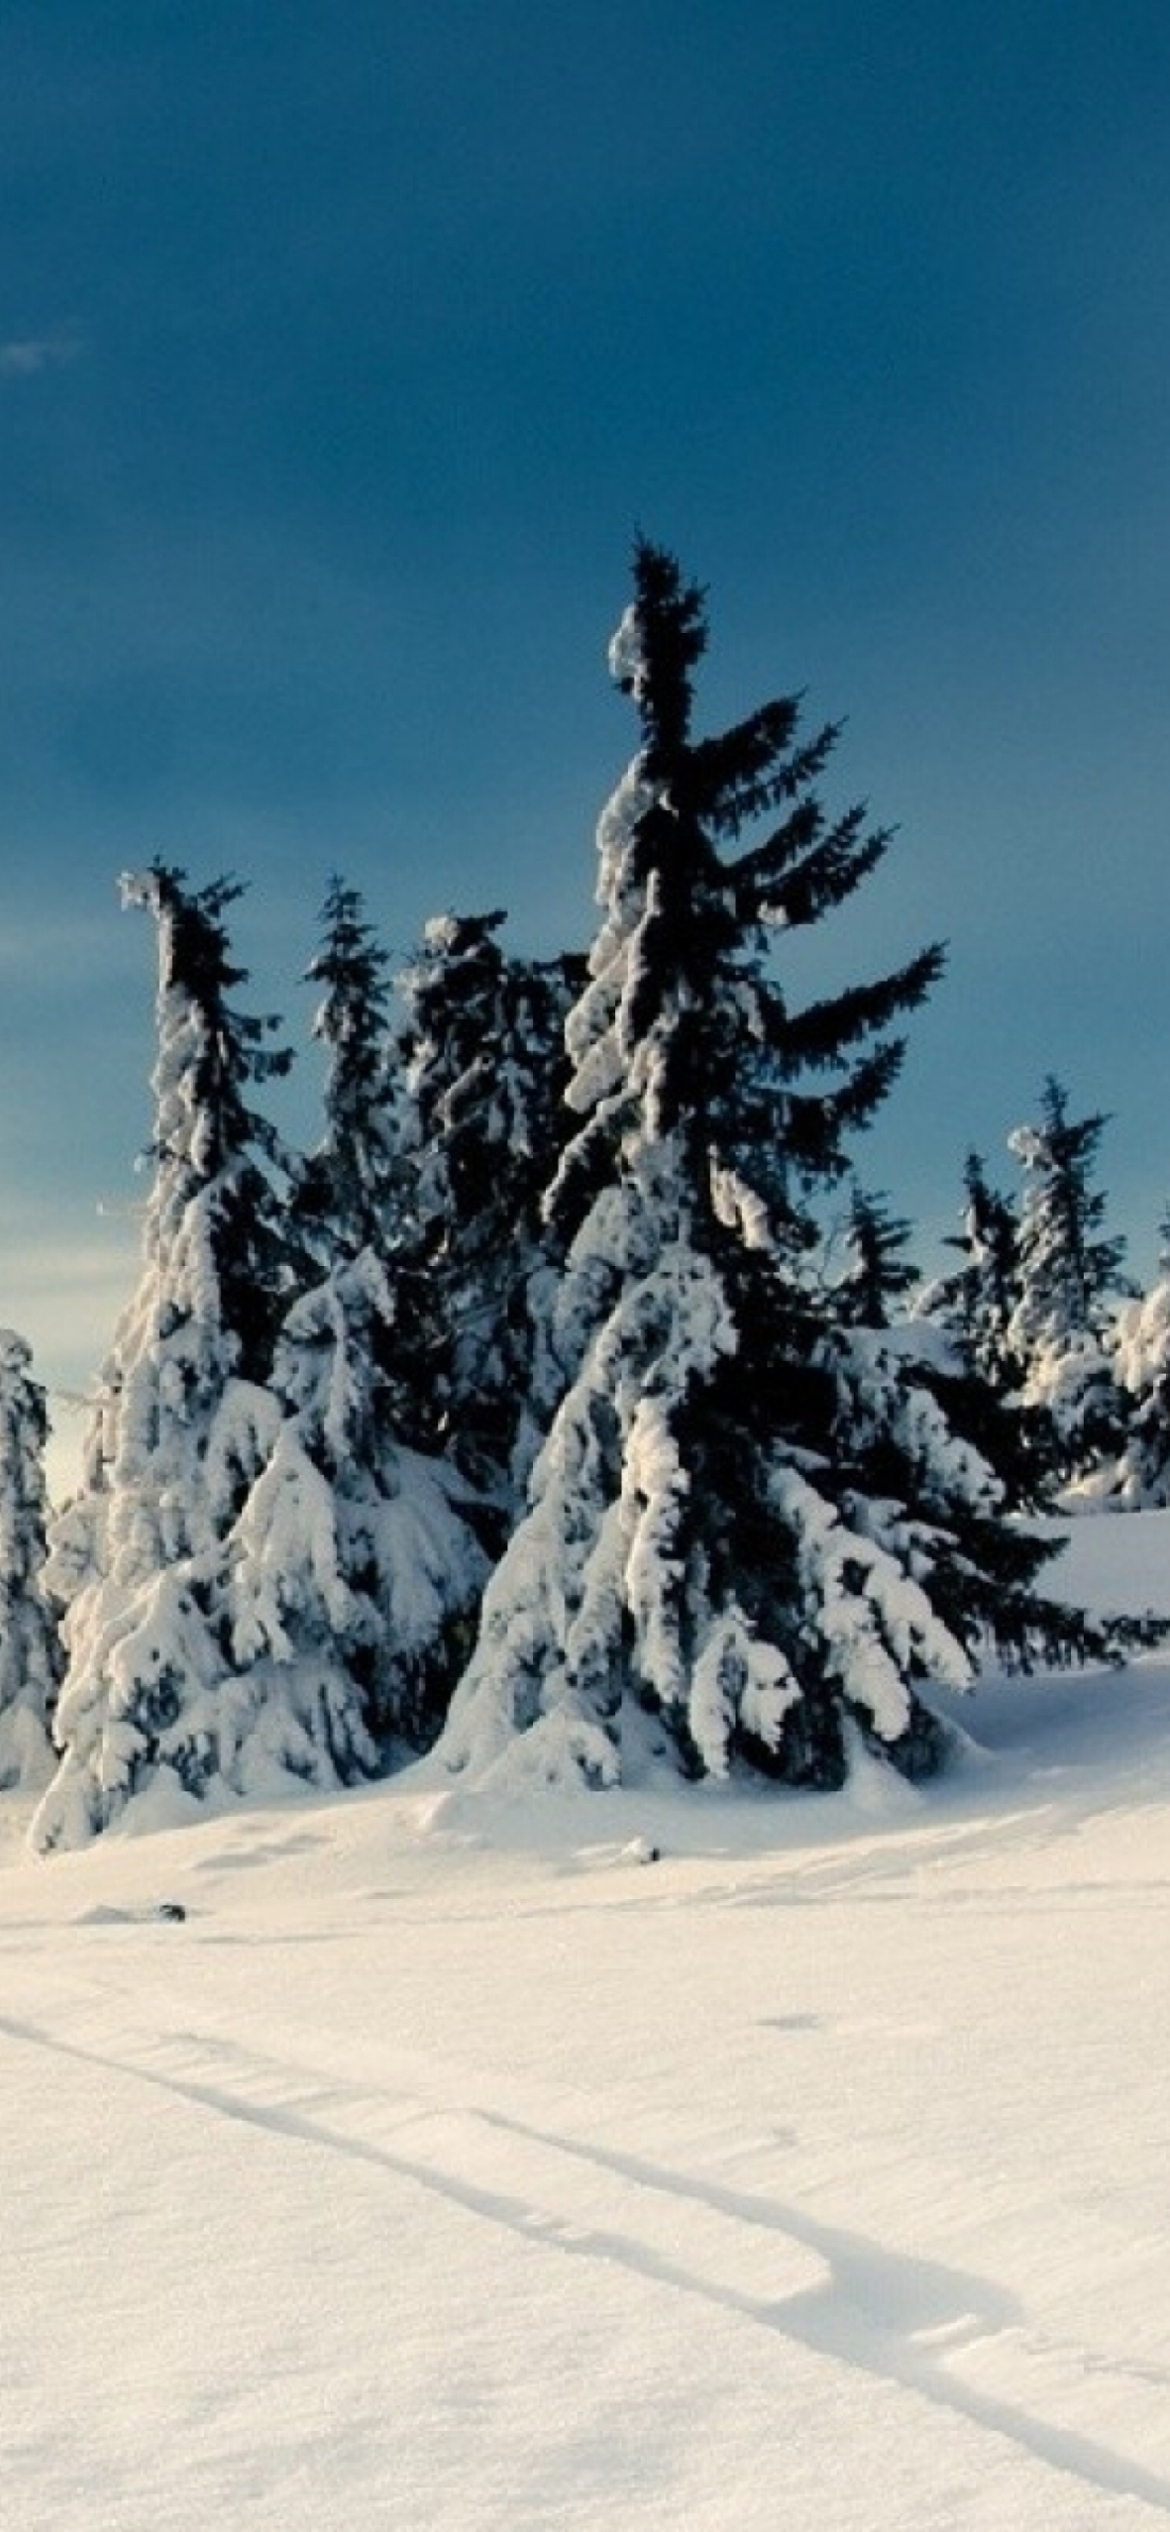 Обои Christmas Trees Covered With Snow 1170x2532